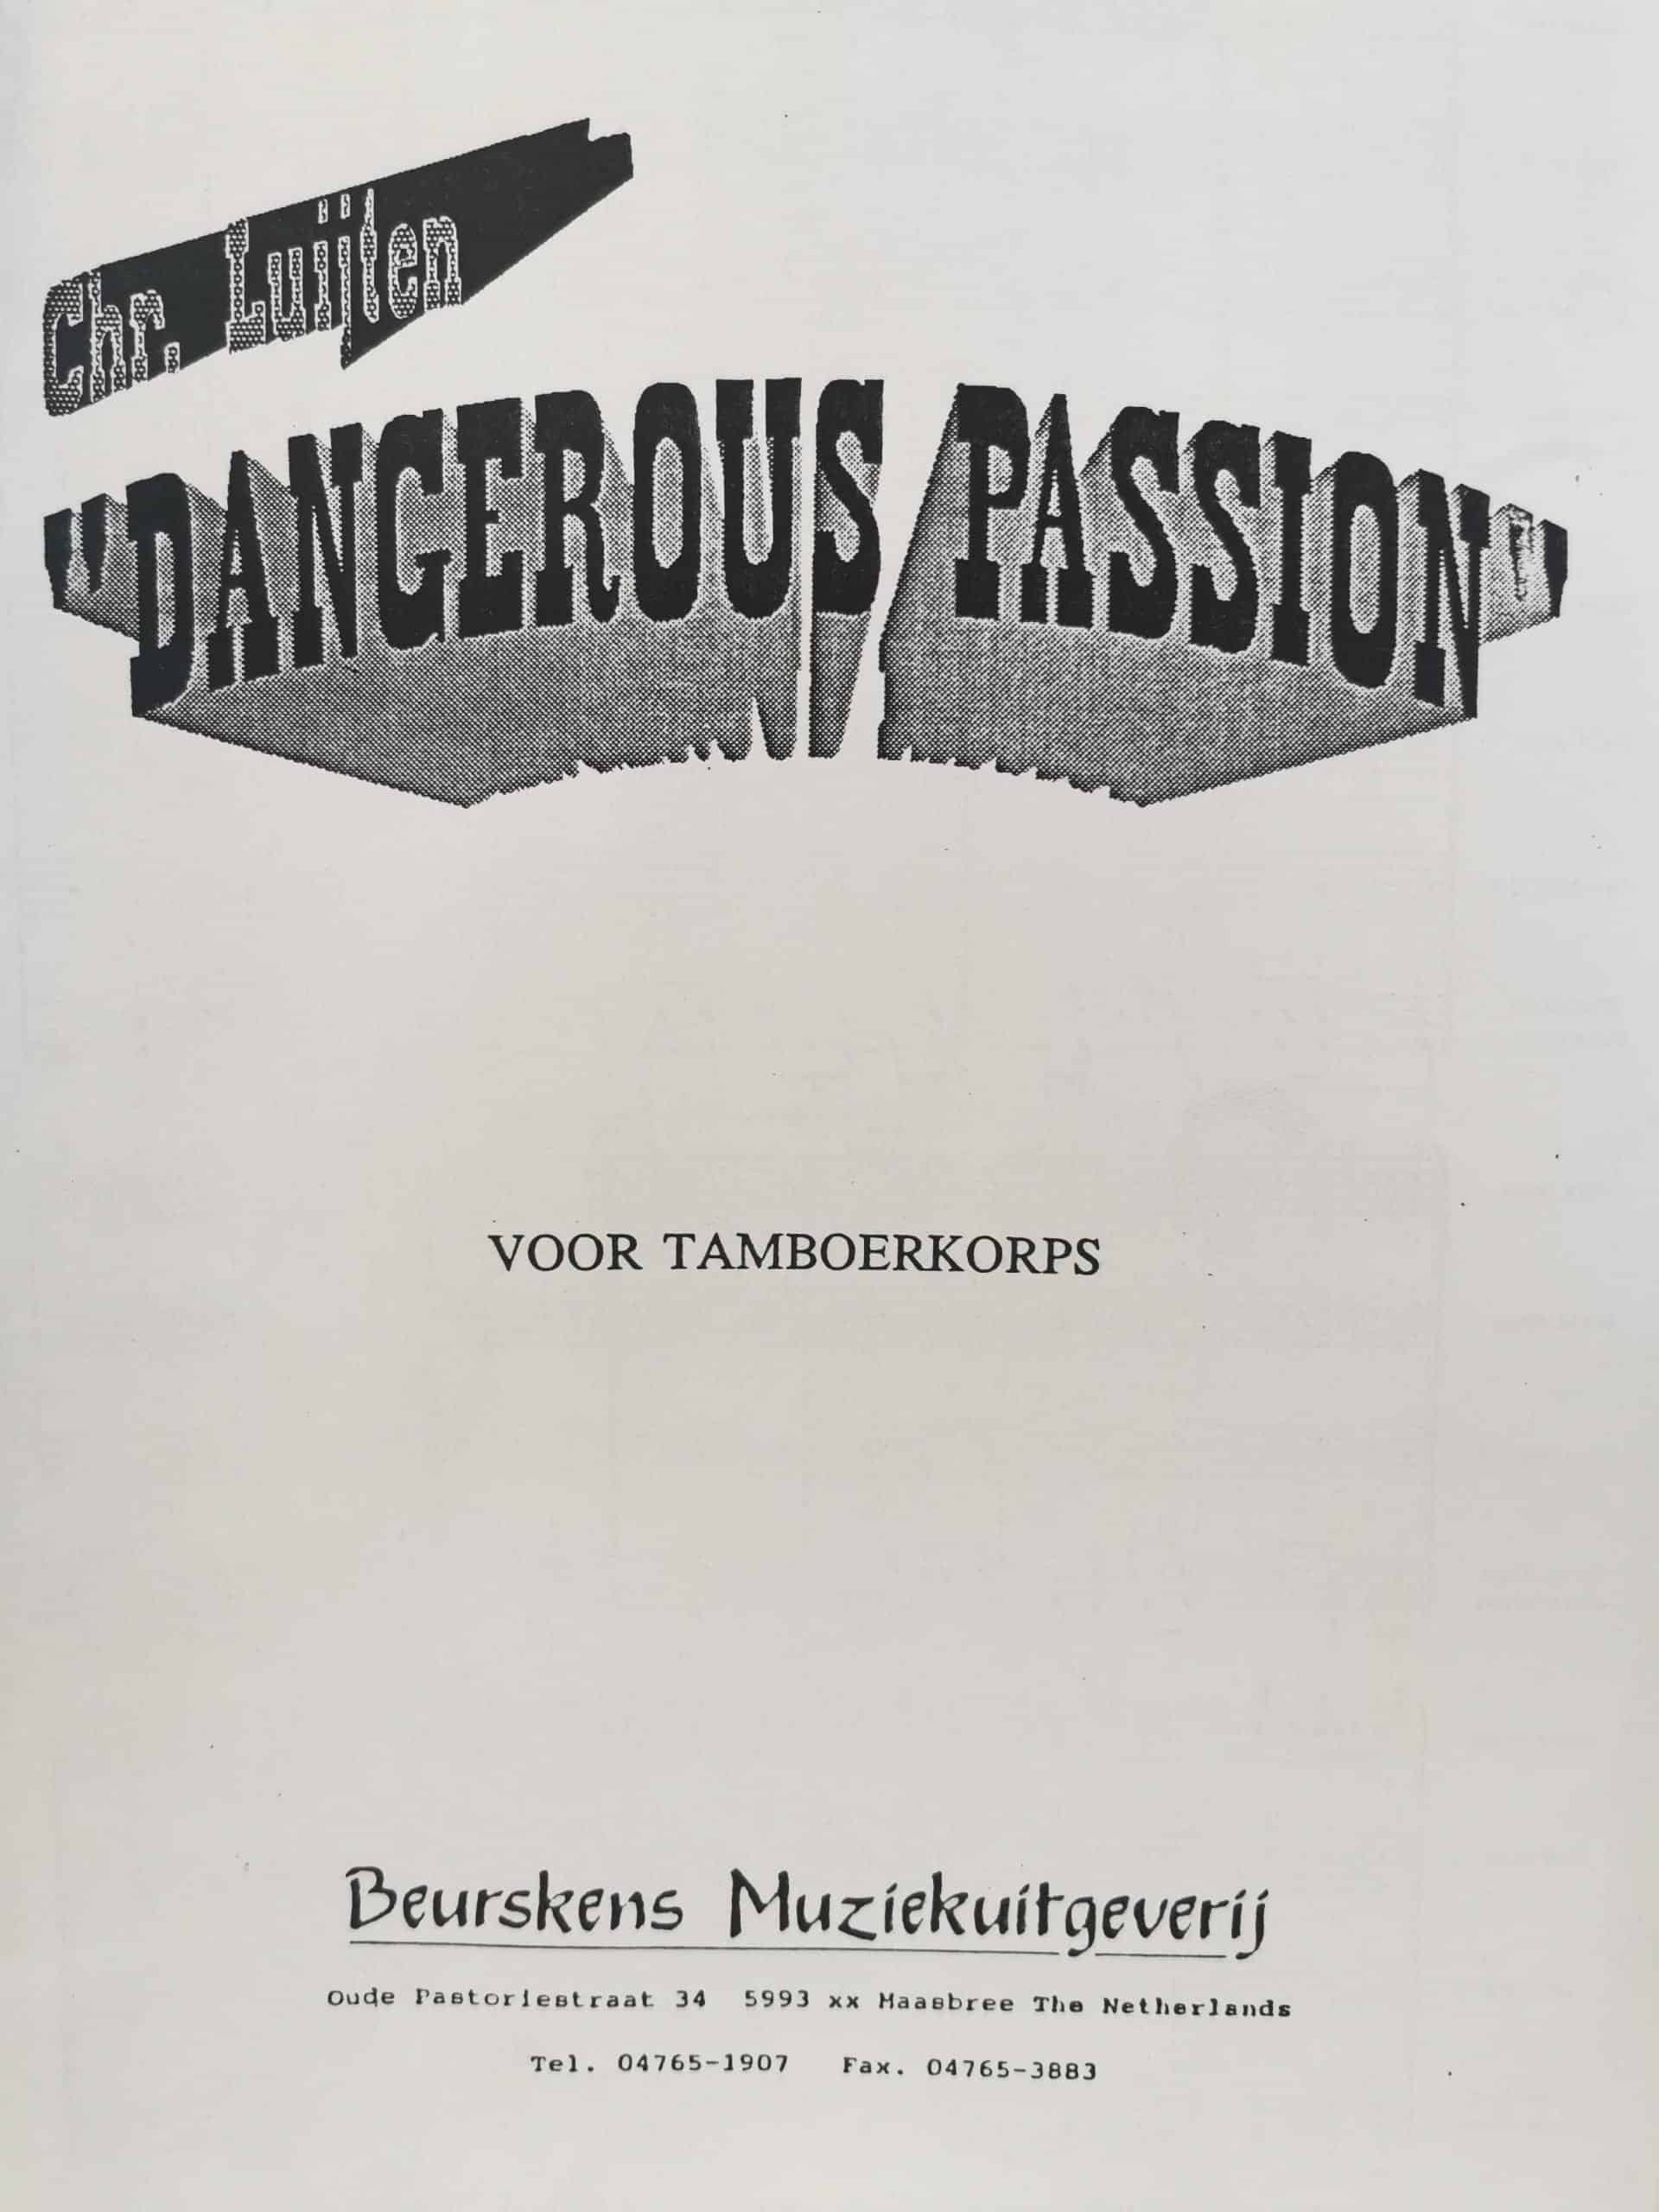 Dangerous Passion by Chr. Juijten